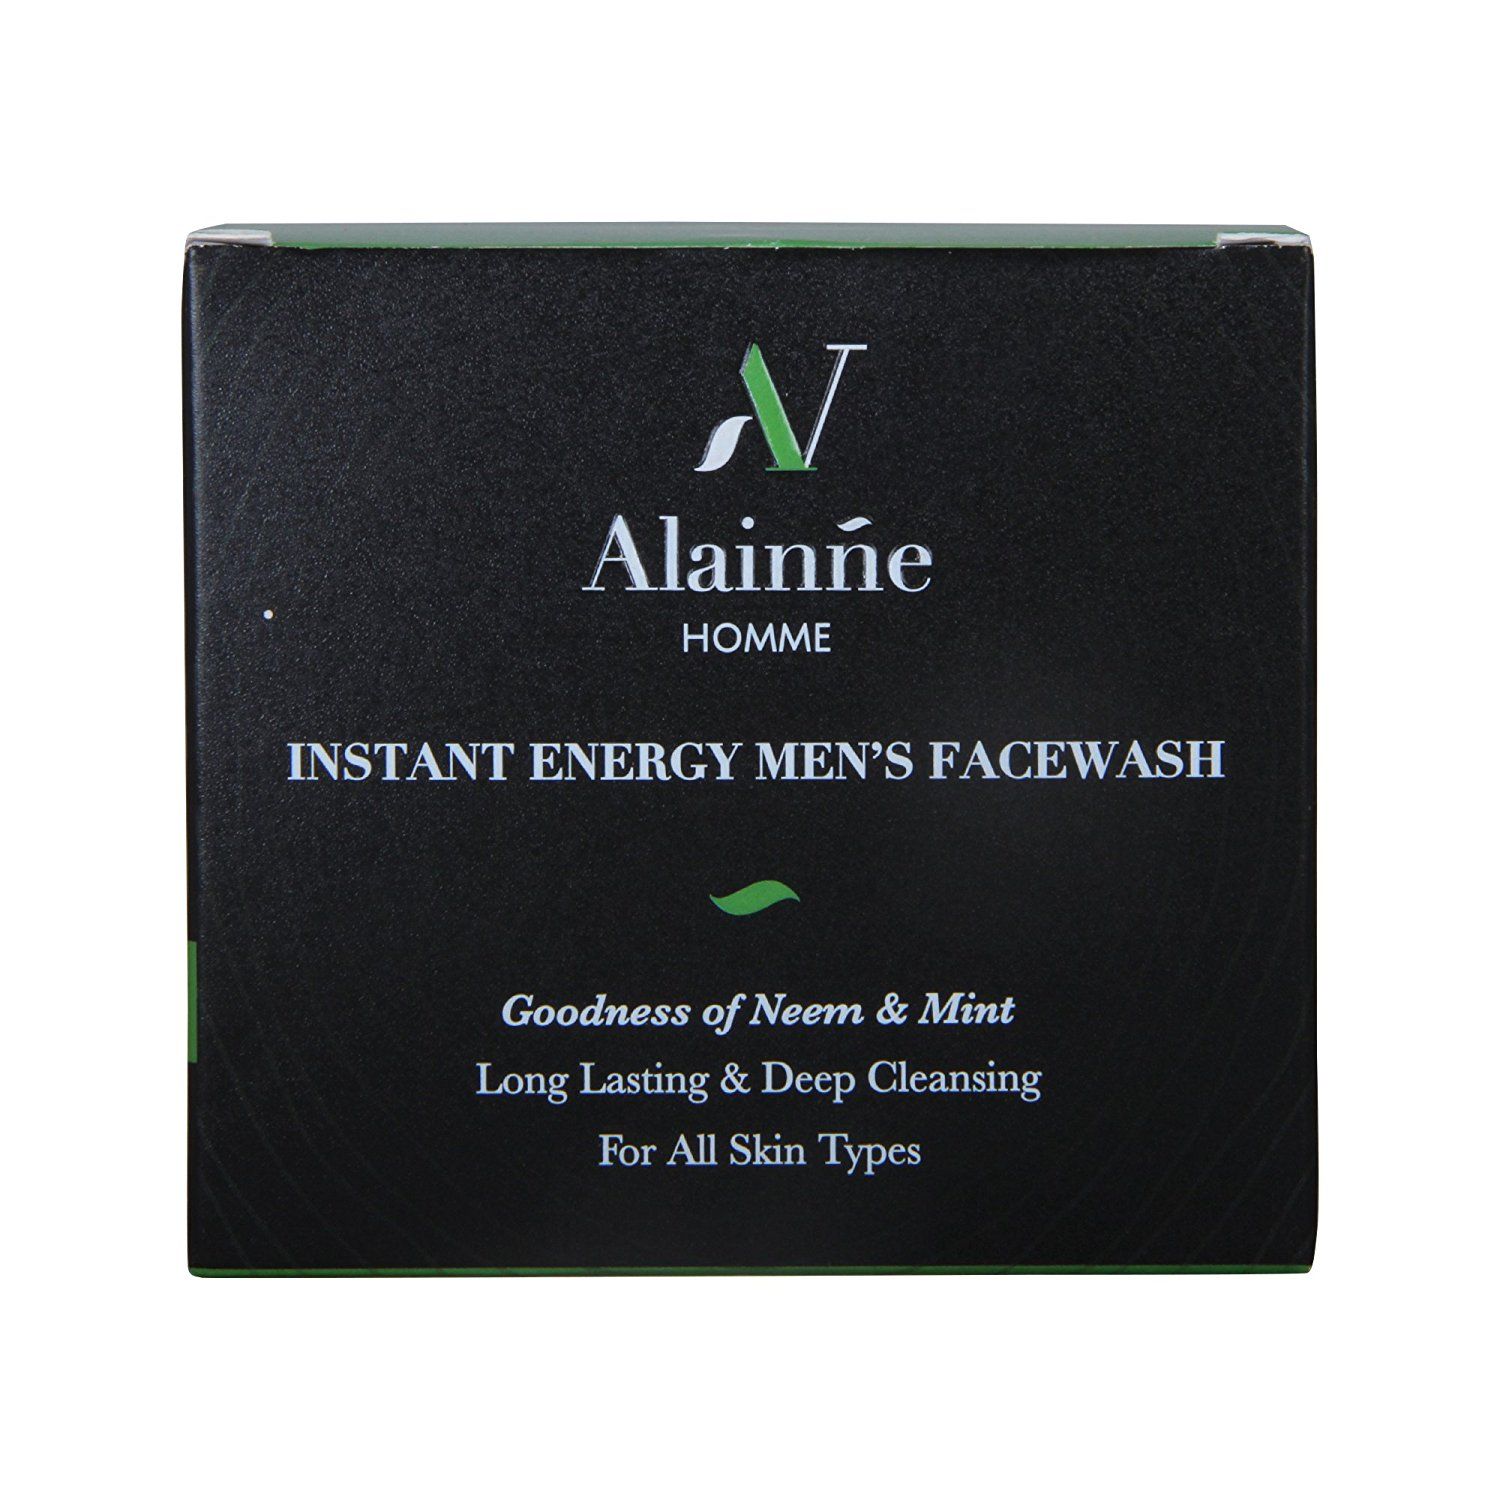 Alainne Instant Energy Men's Face Wash Sachet